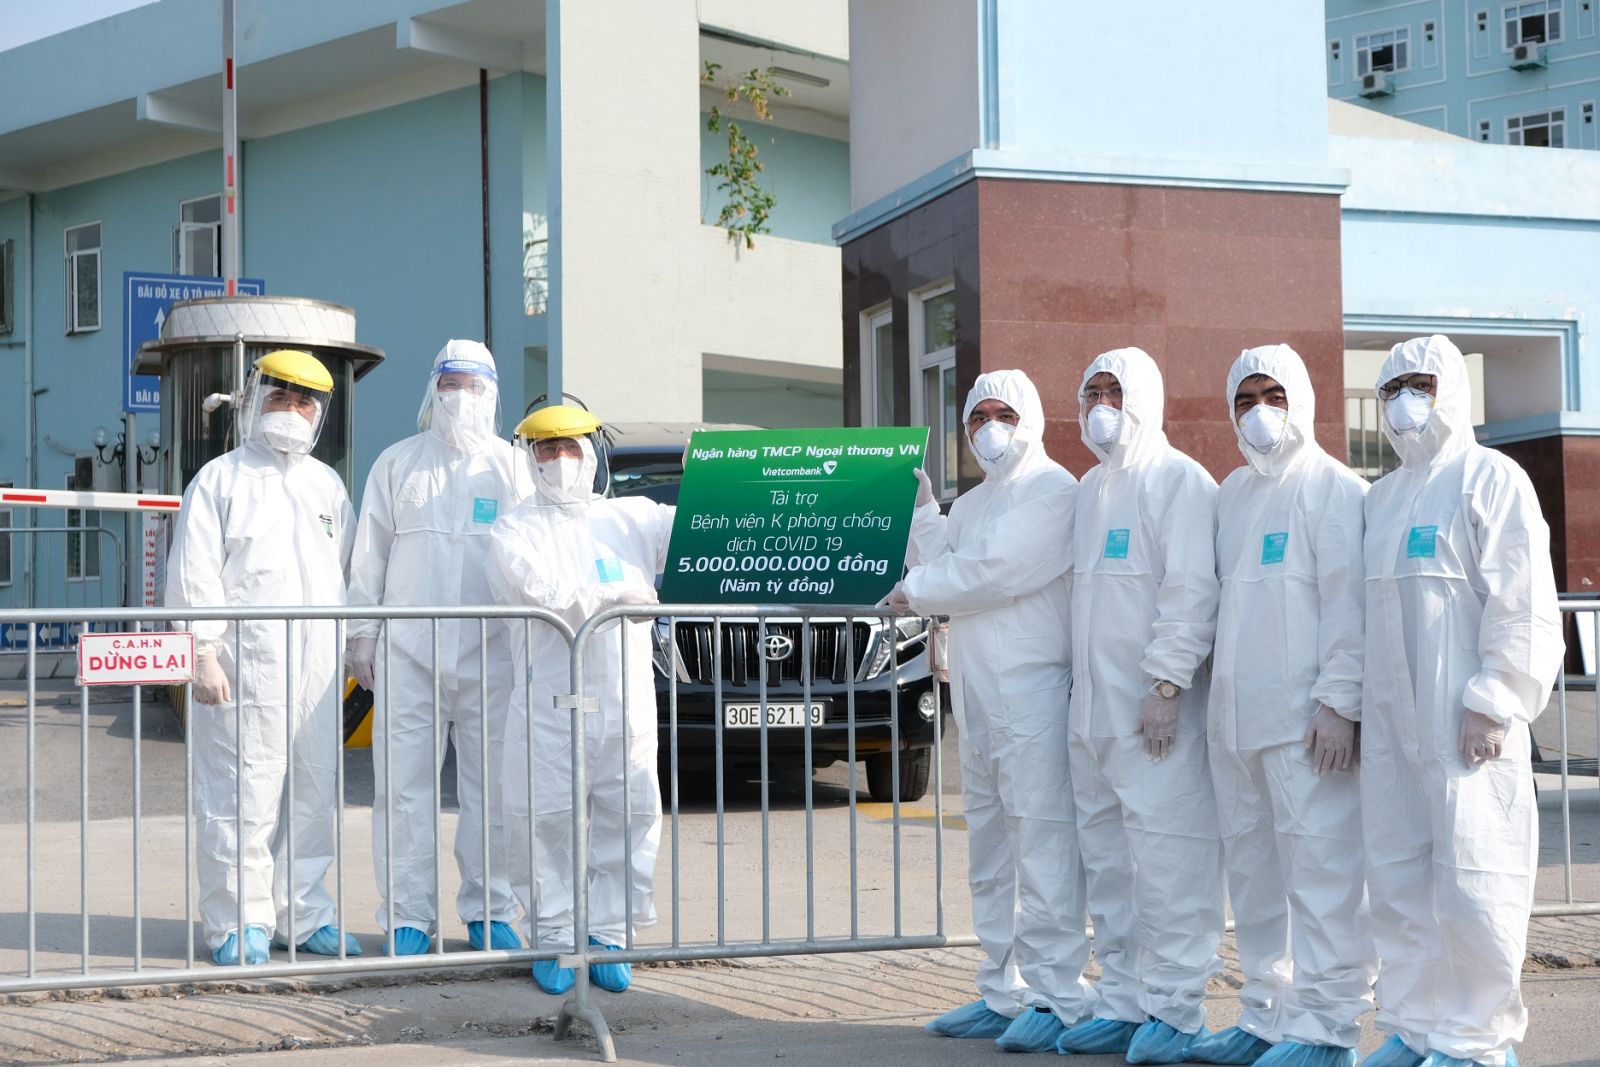 Vietcombank trao tặng 5 tỷ đồng và 10.000 suất ăn hỗ trợ Bệnh viện K cơ sở Tân Triều 